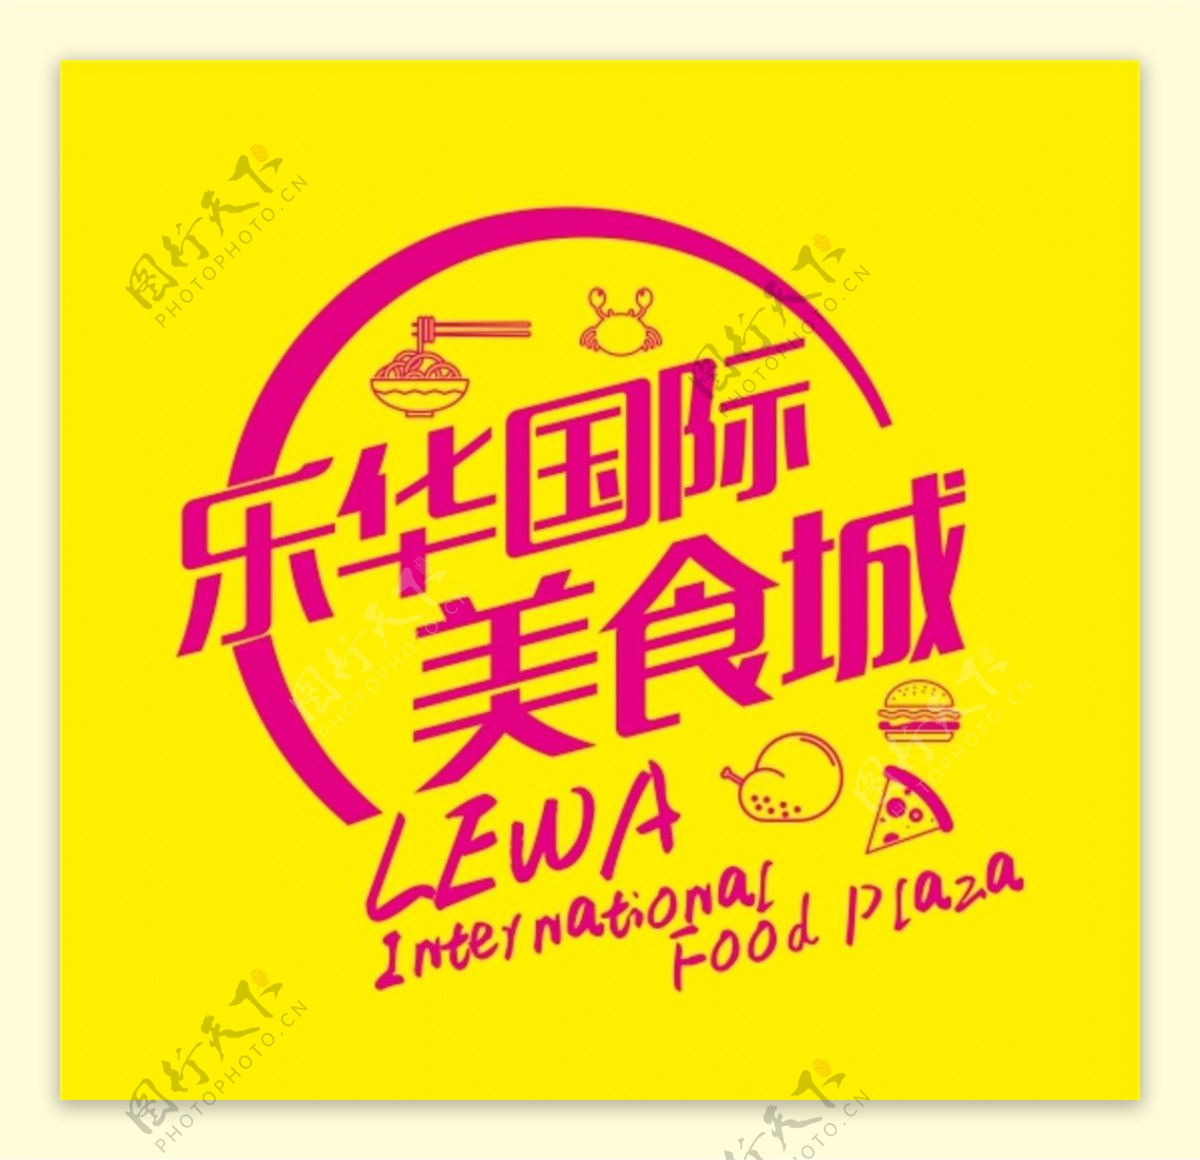 乐华国际美食城标志LOGO